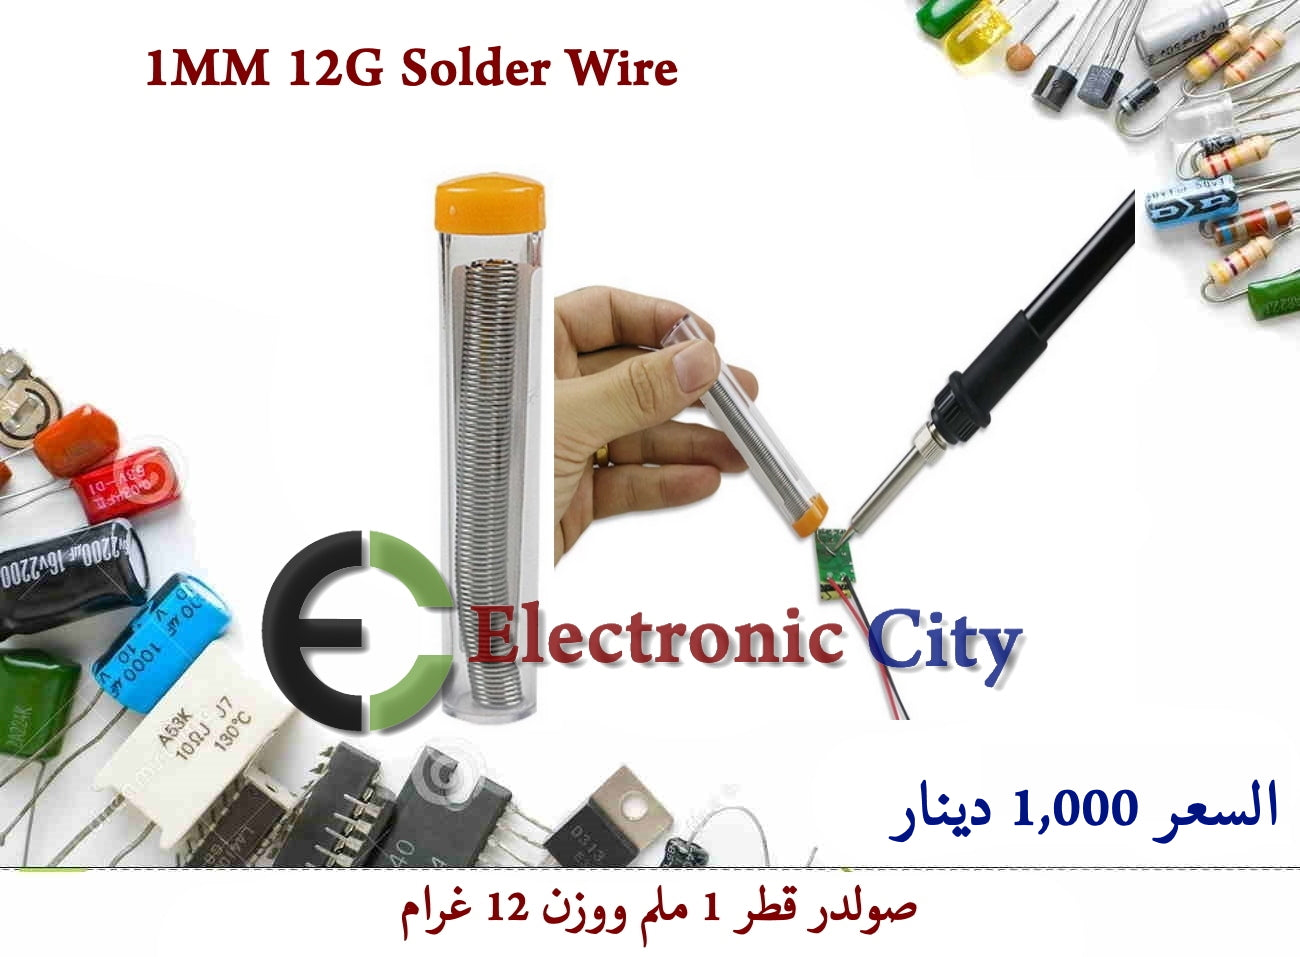 1MM 12G Solder Wire